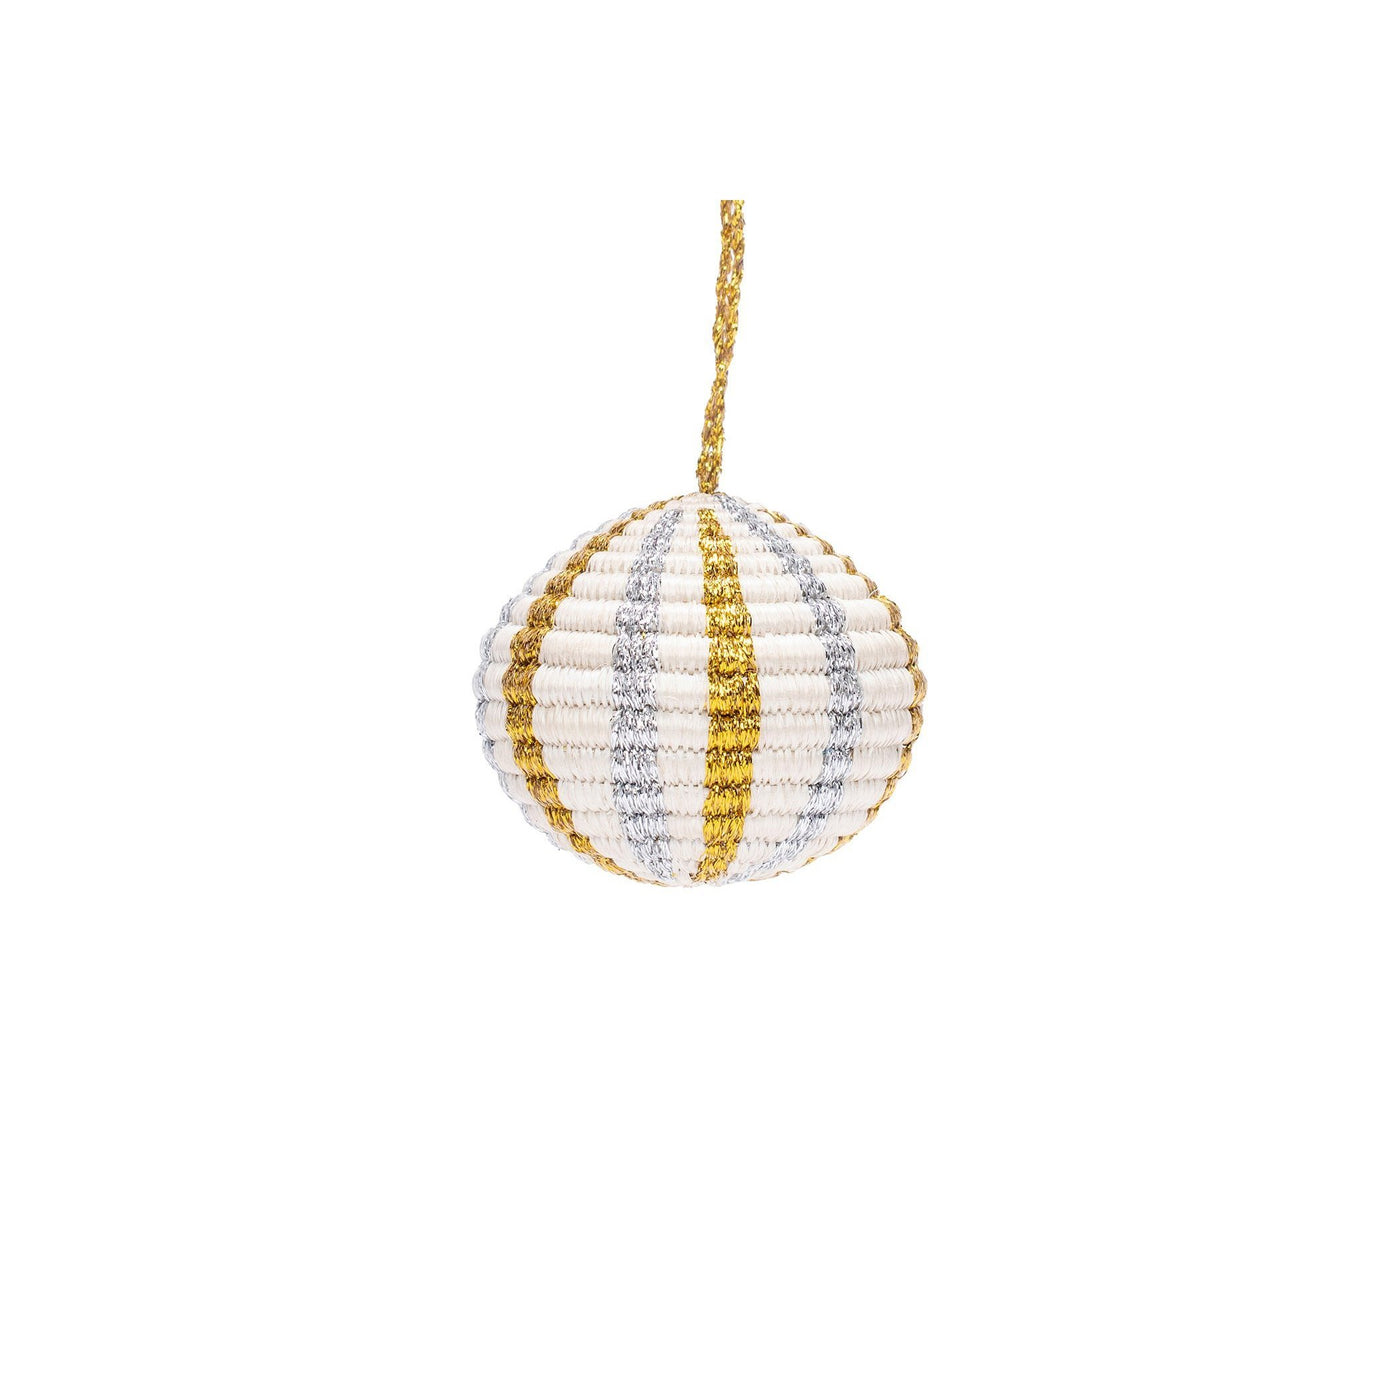 Silver & Gold Globe Ornament